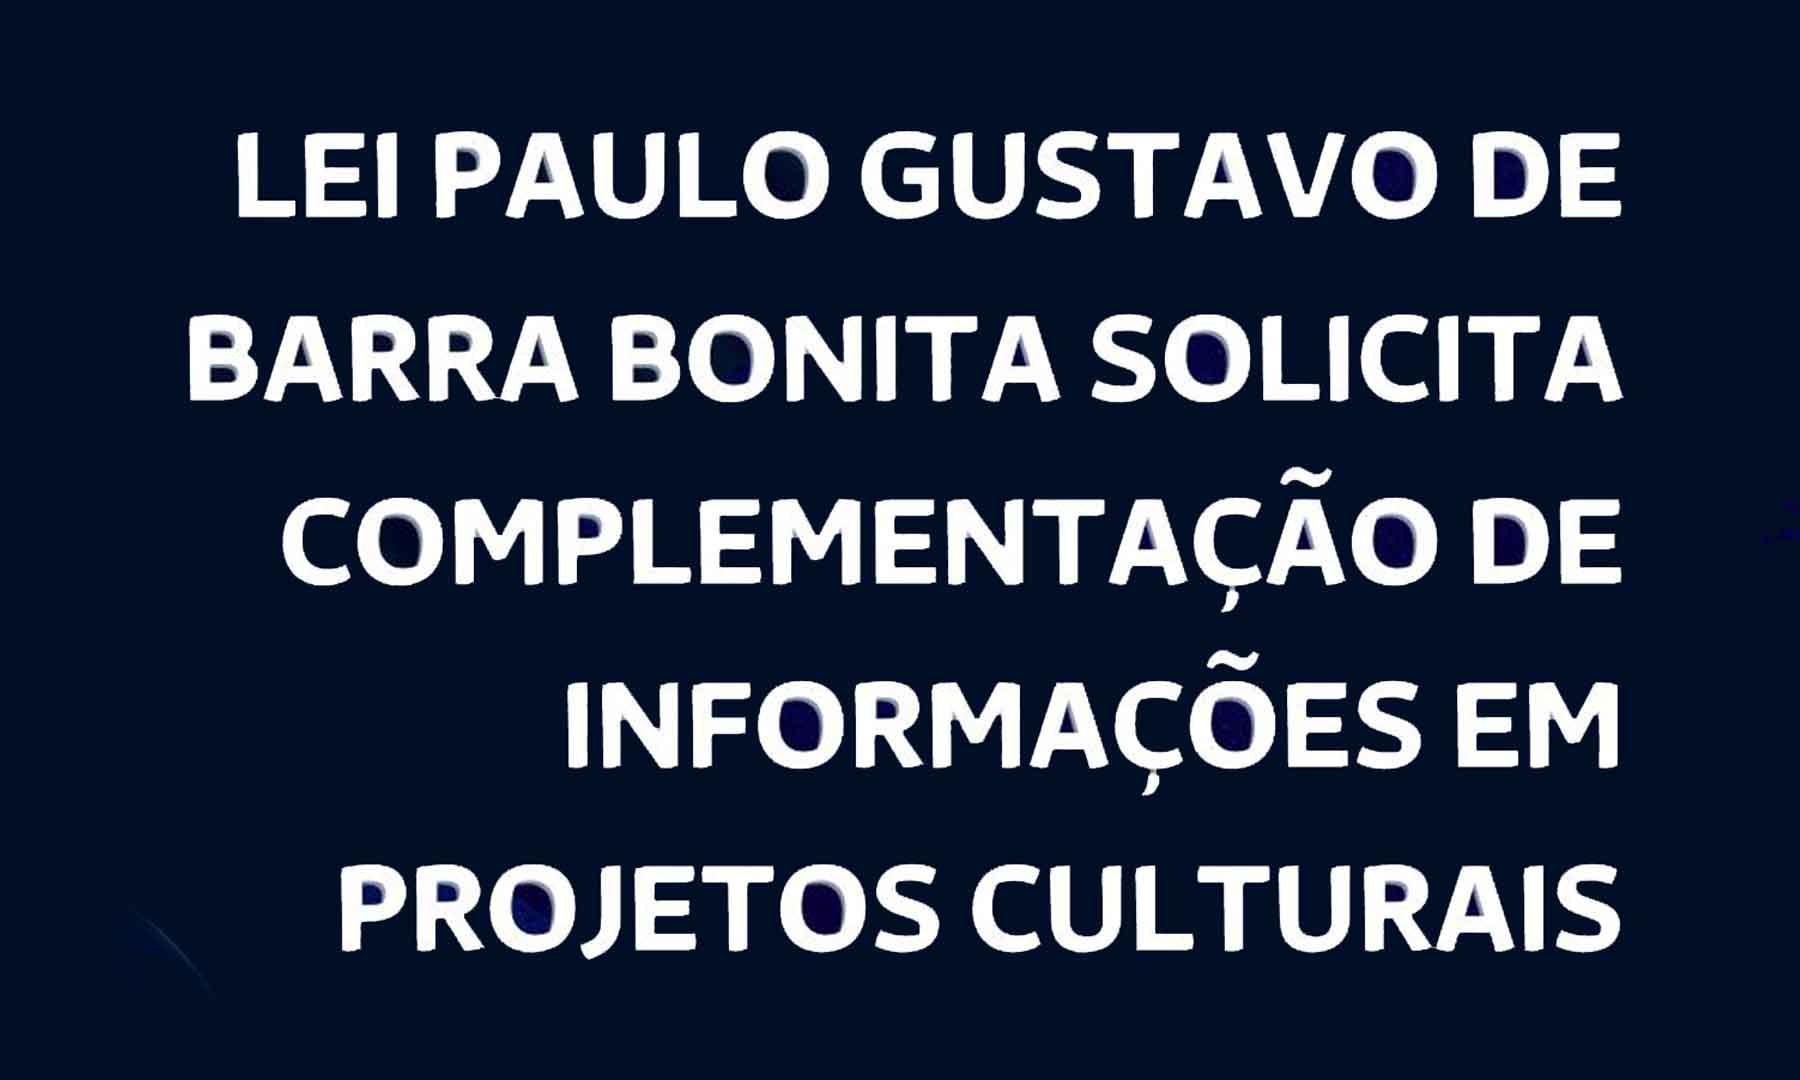 LEI PAULO GUSTAVO DE BARRA BONITA SOLICITA COMPLEMENTAÇÃO DE INFORMAÇÕES EM PROJETOS CULTURAIS